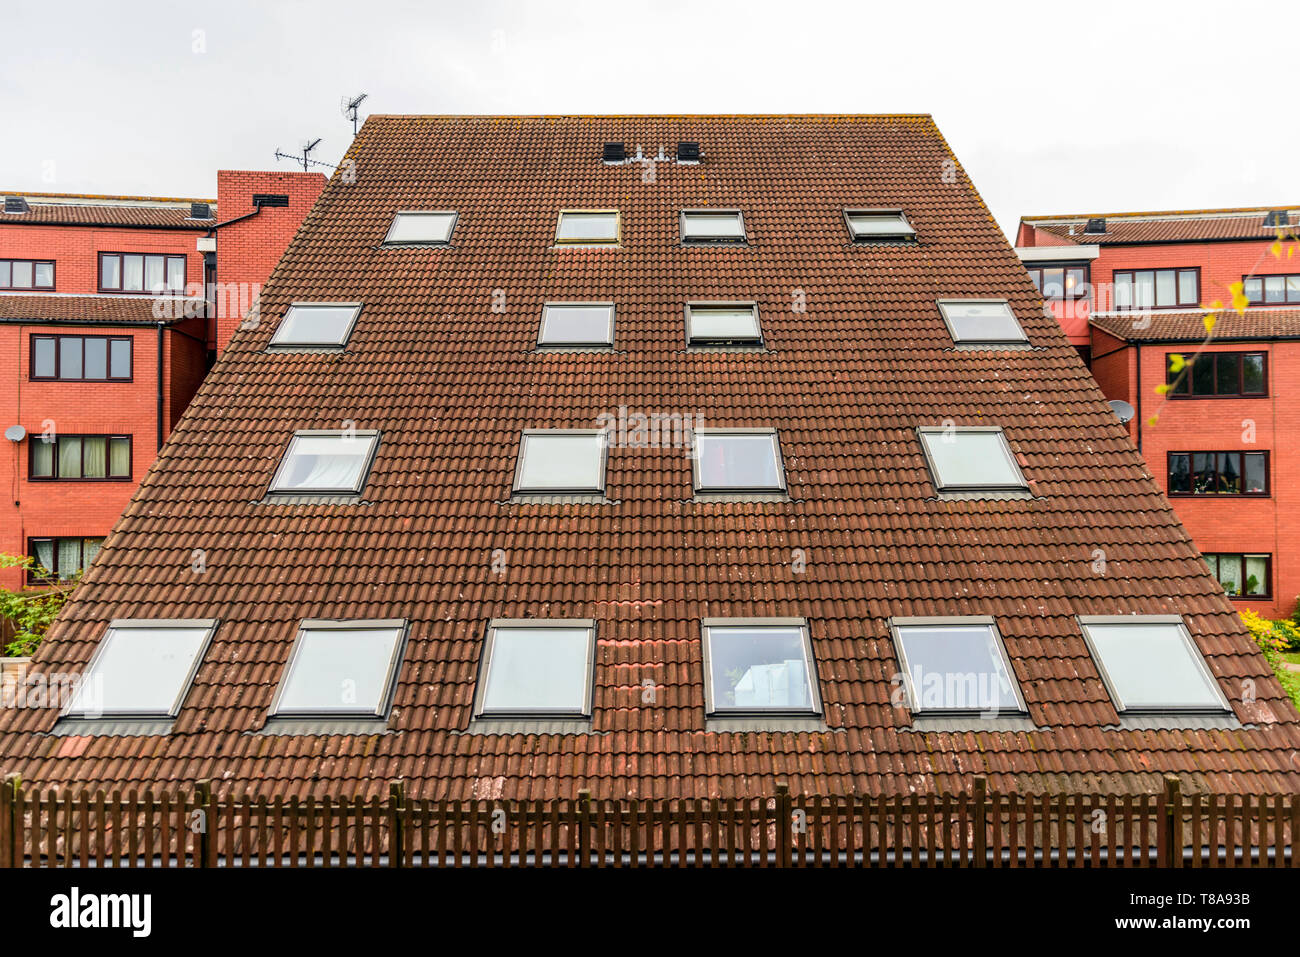 45 grad winkel Wand von Red Brick Apartments Gebäude in England Großbritannien Stockfoto